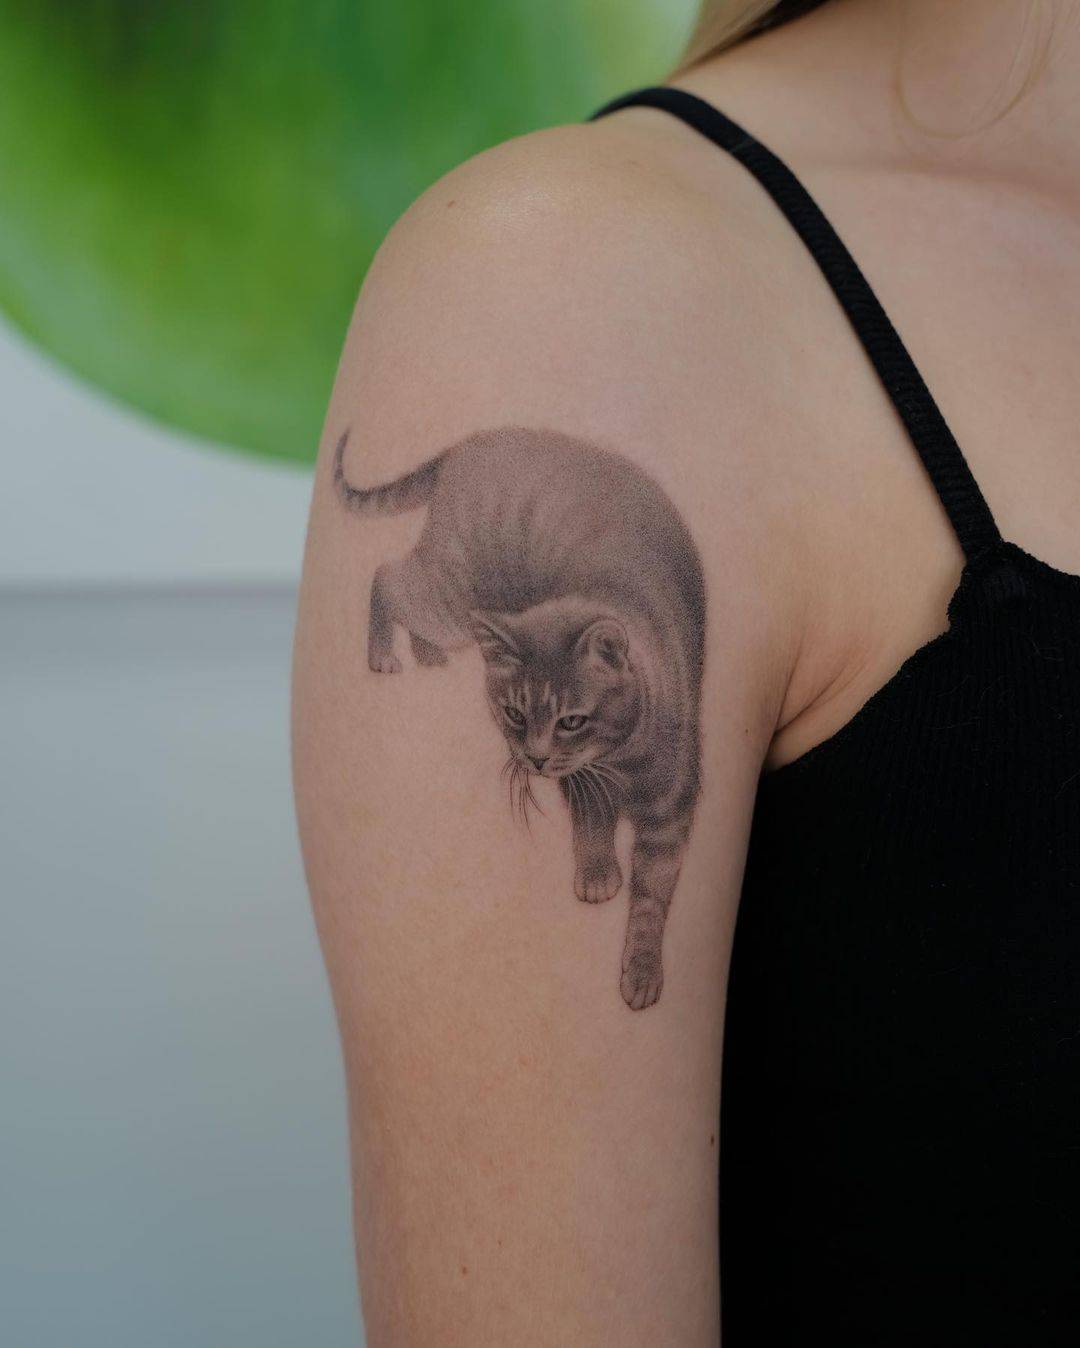 Cat portrait tattoo design by jjjaylud